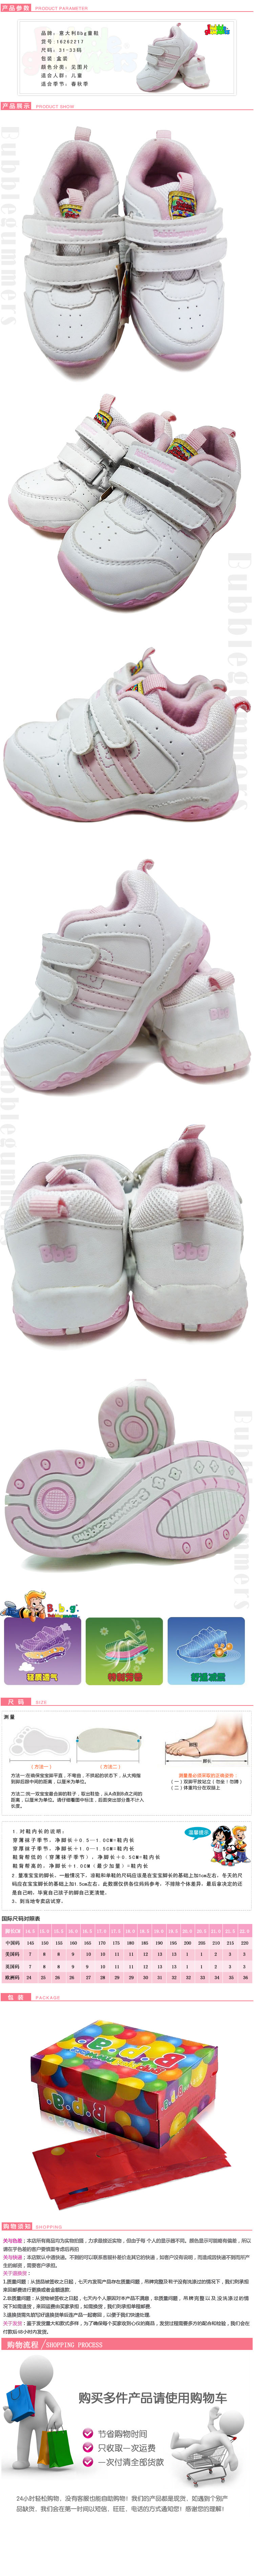 意大利BBG童鞋粉红色可爱描述模板